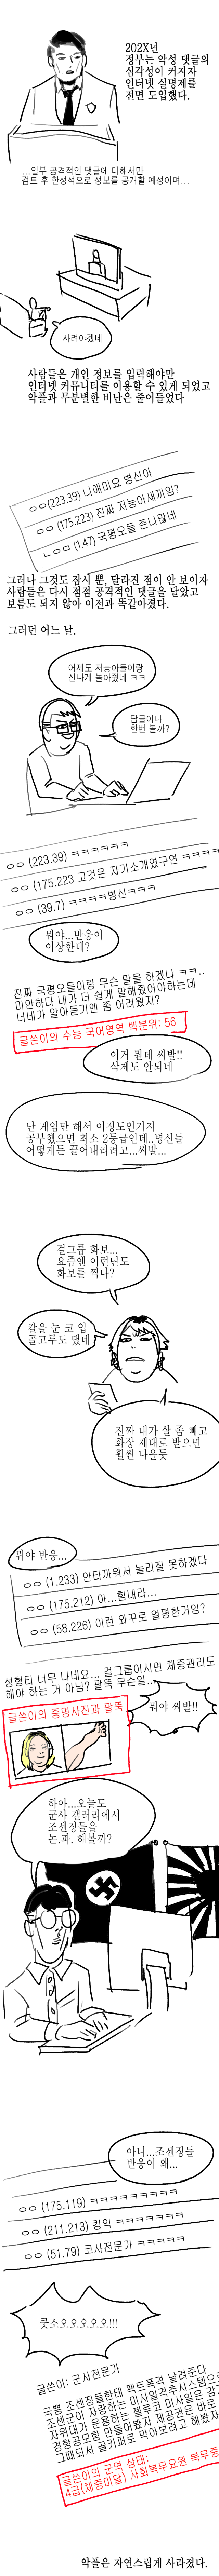 인터넷 실명제 도입되는 만화.manhwa